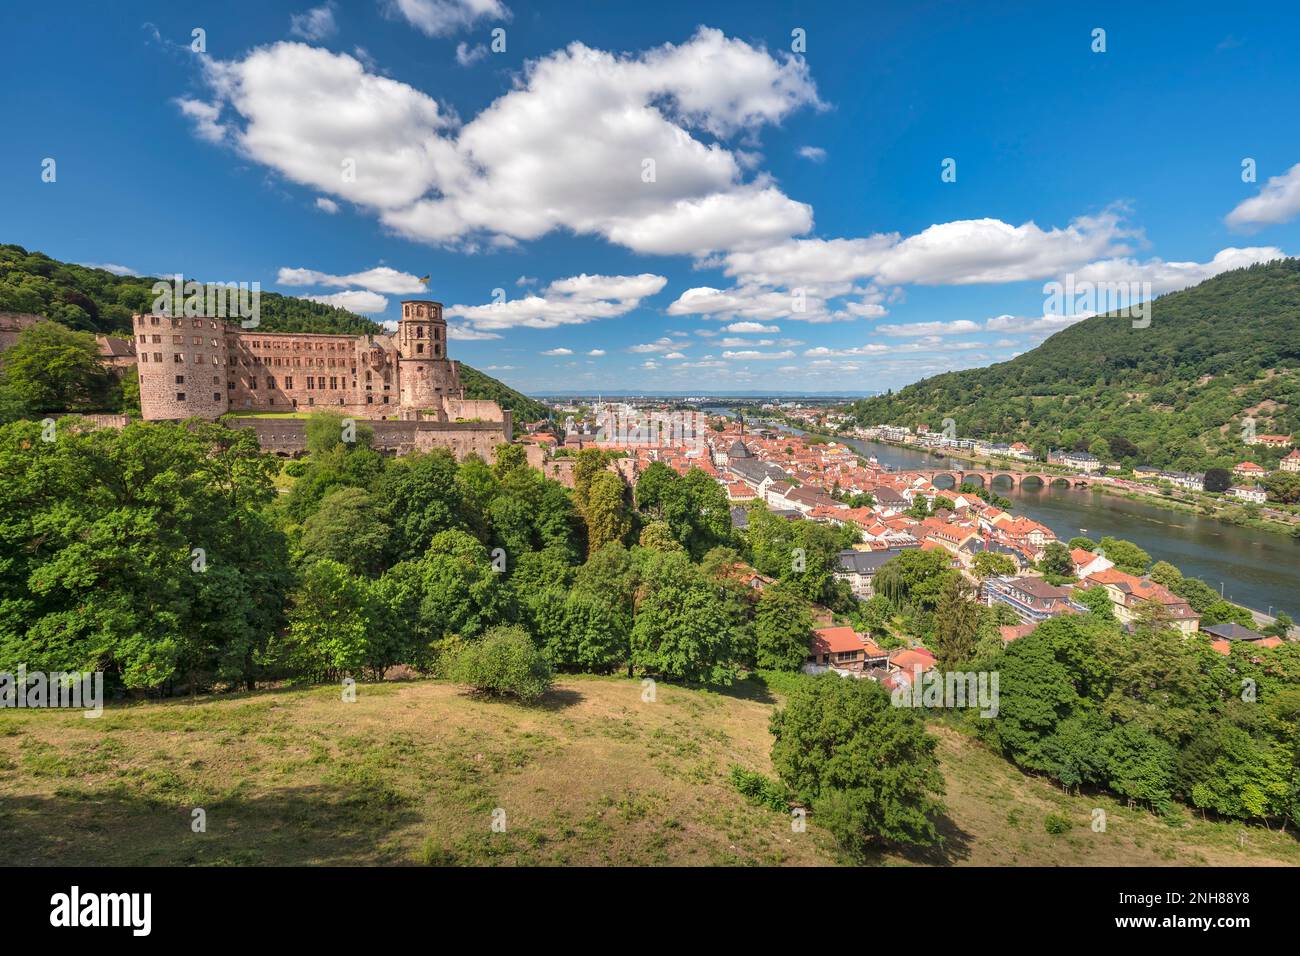 Heidelberg Germania, skyline della città sul fiume Neckar con il Ponte Vecchio di Alte e il Castello di Heidelberg Schloss Foto Stock